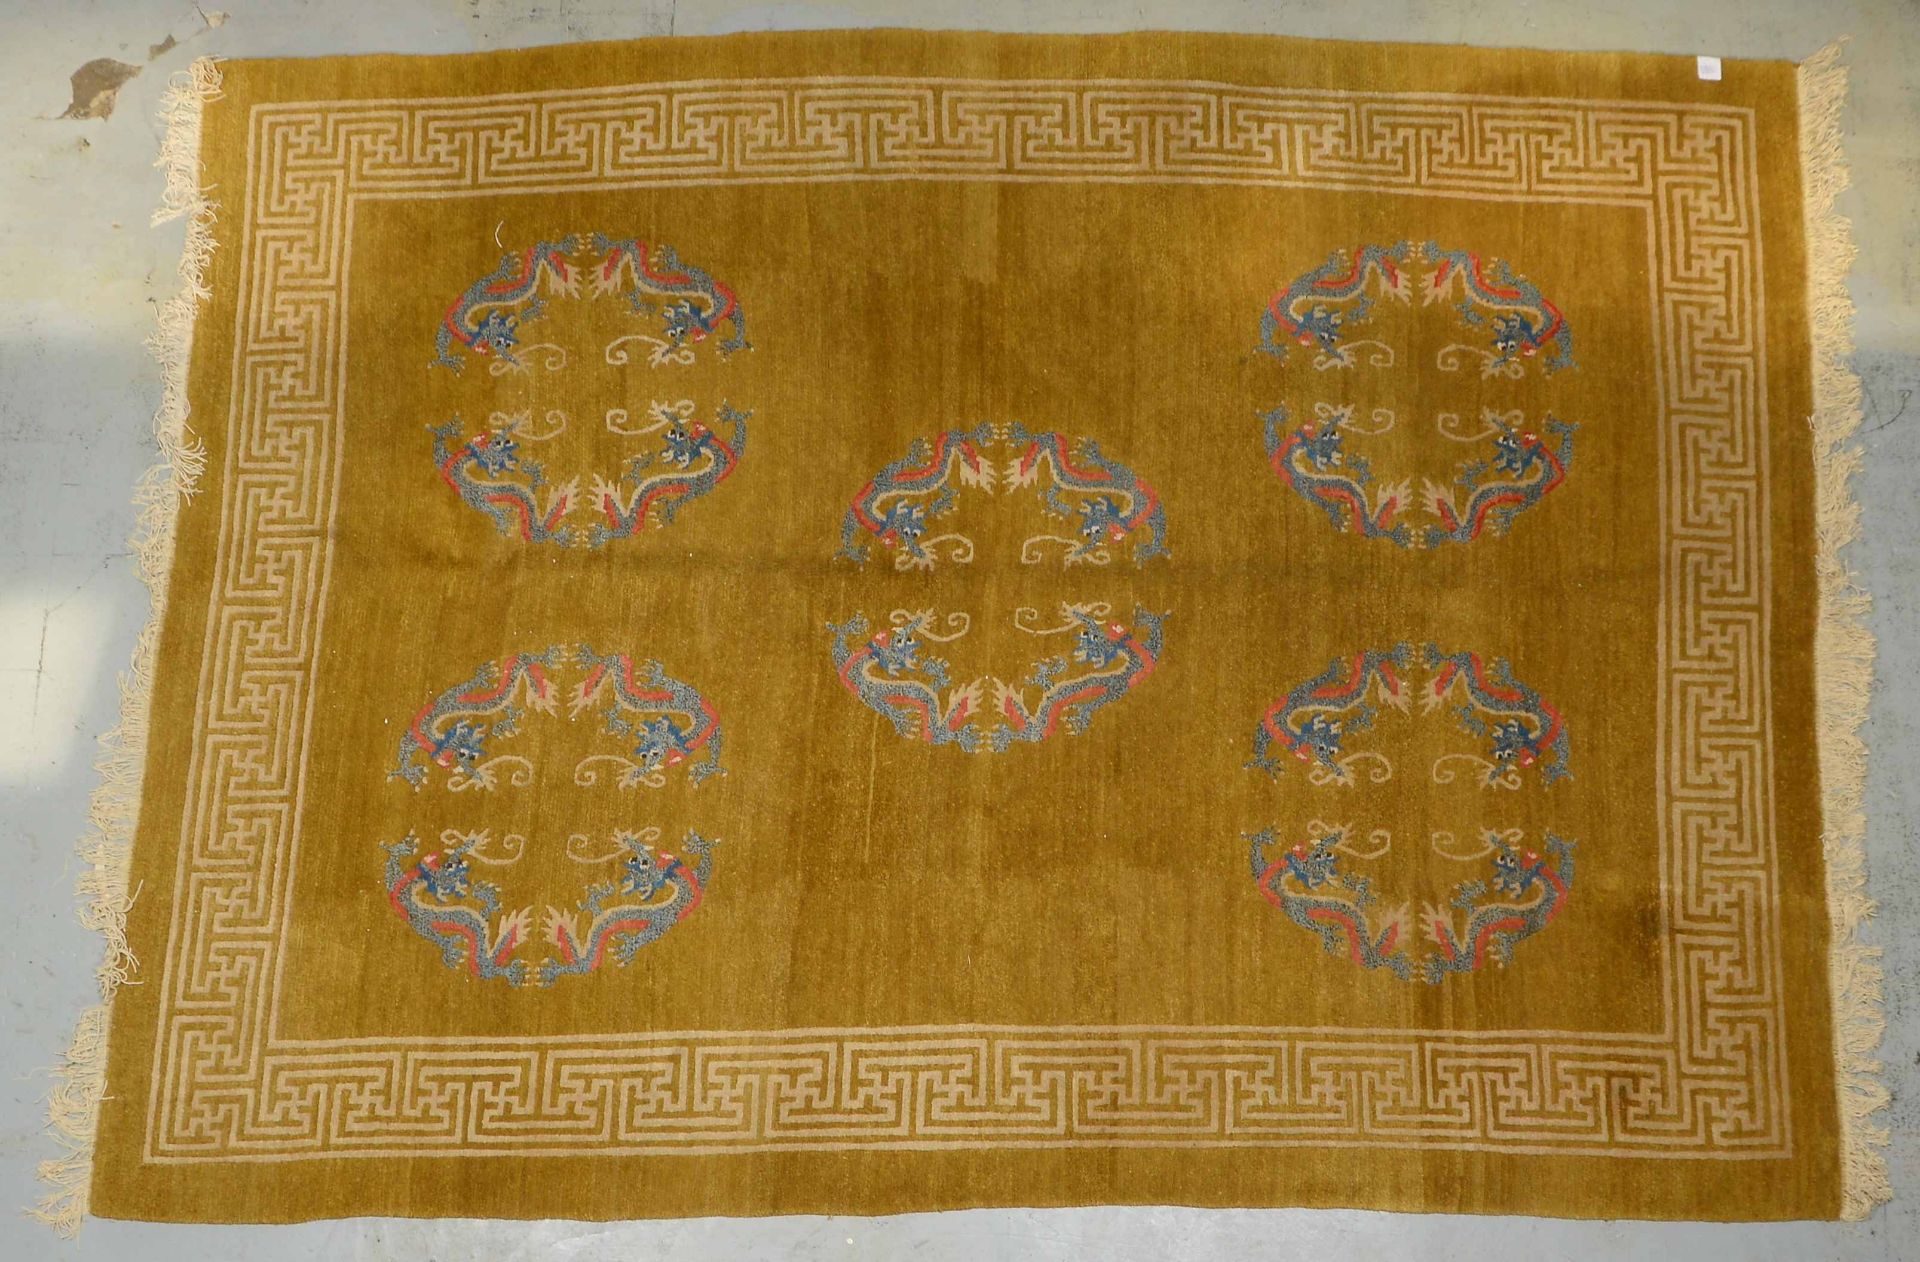 Teppich (China), mit typischen Motiven (-Drachenreigen-) und Maeanderborduere, hochflorig, in insges